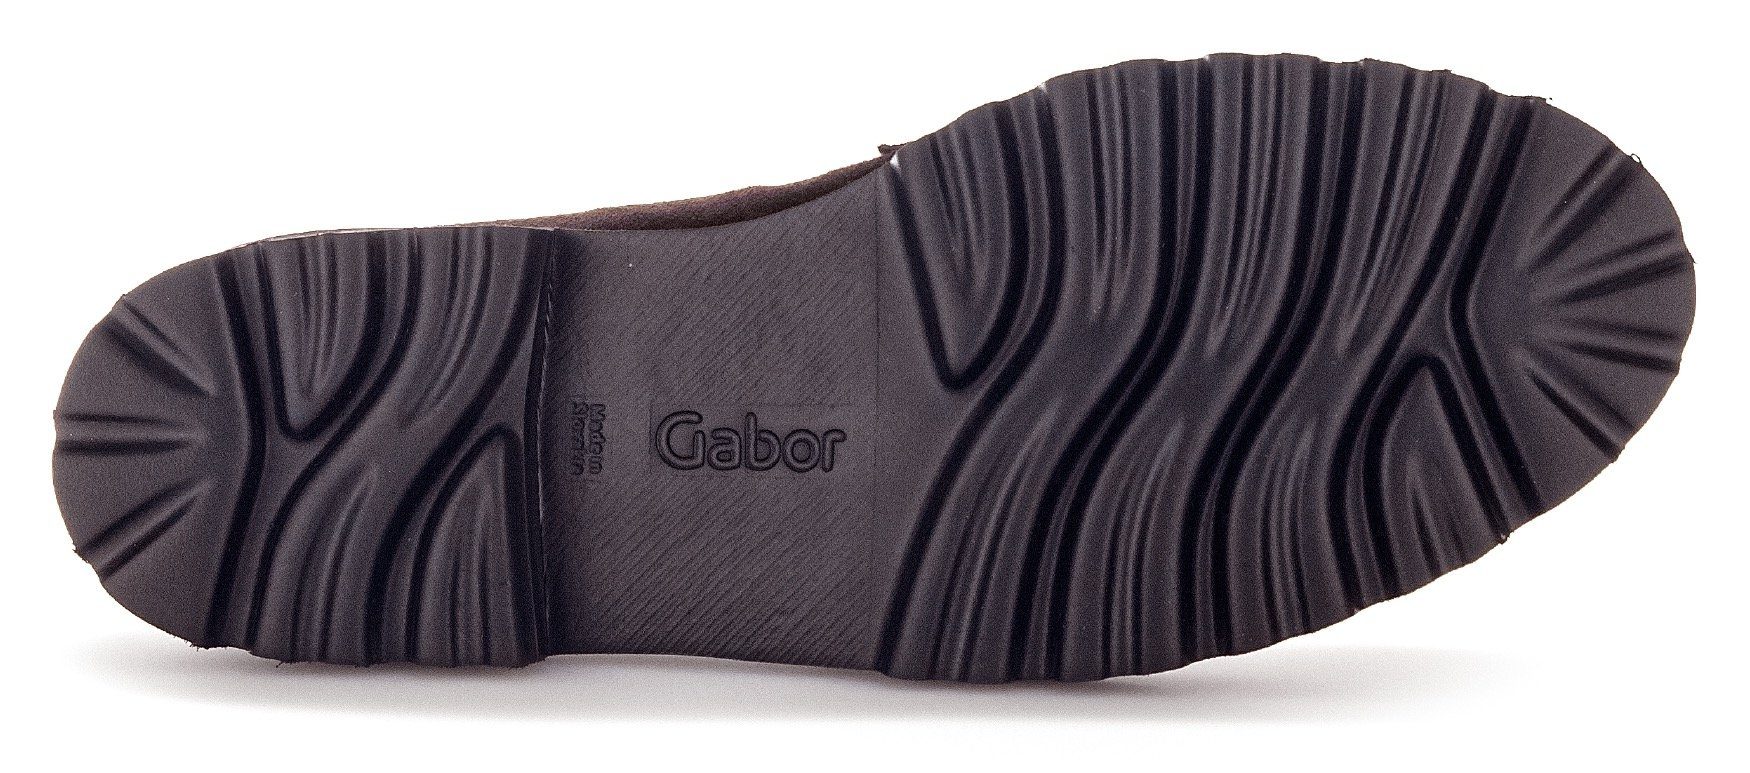 Gabor Slipper Fitting-Ausstattung mit dunkelbraun-schwarz Best